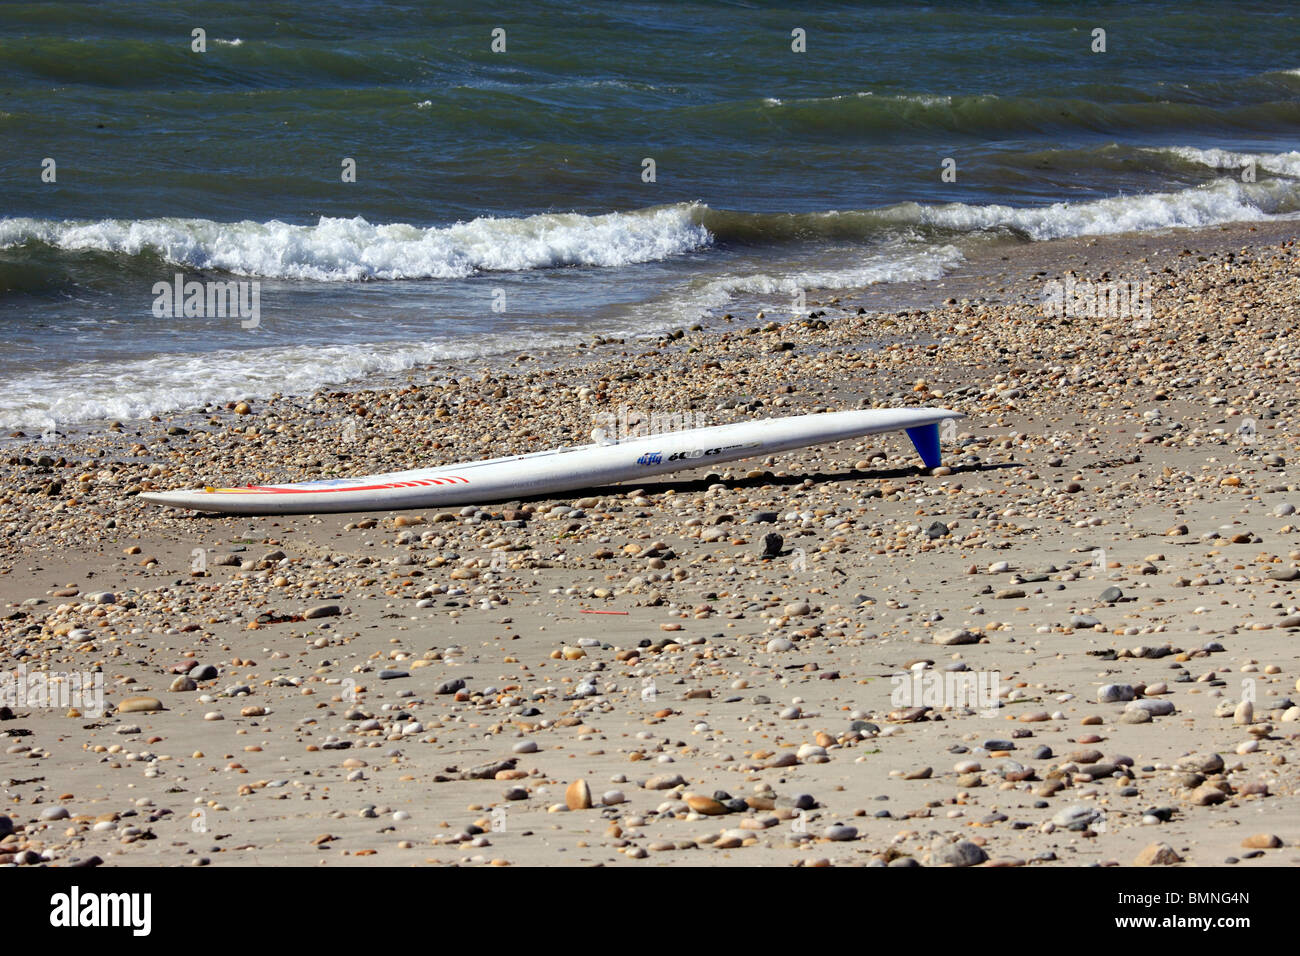 Surf board on beach, Long Island, NY Stock Photo